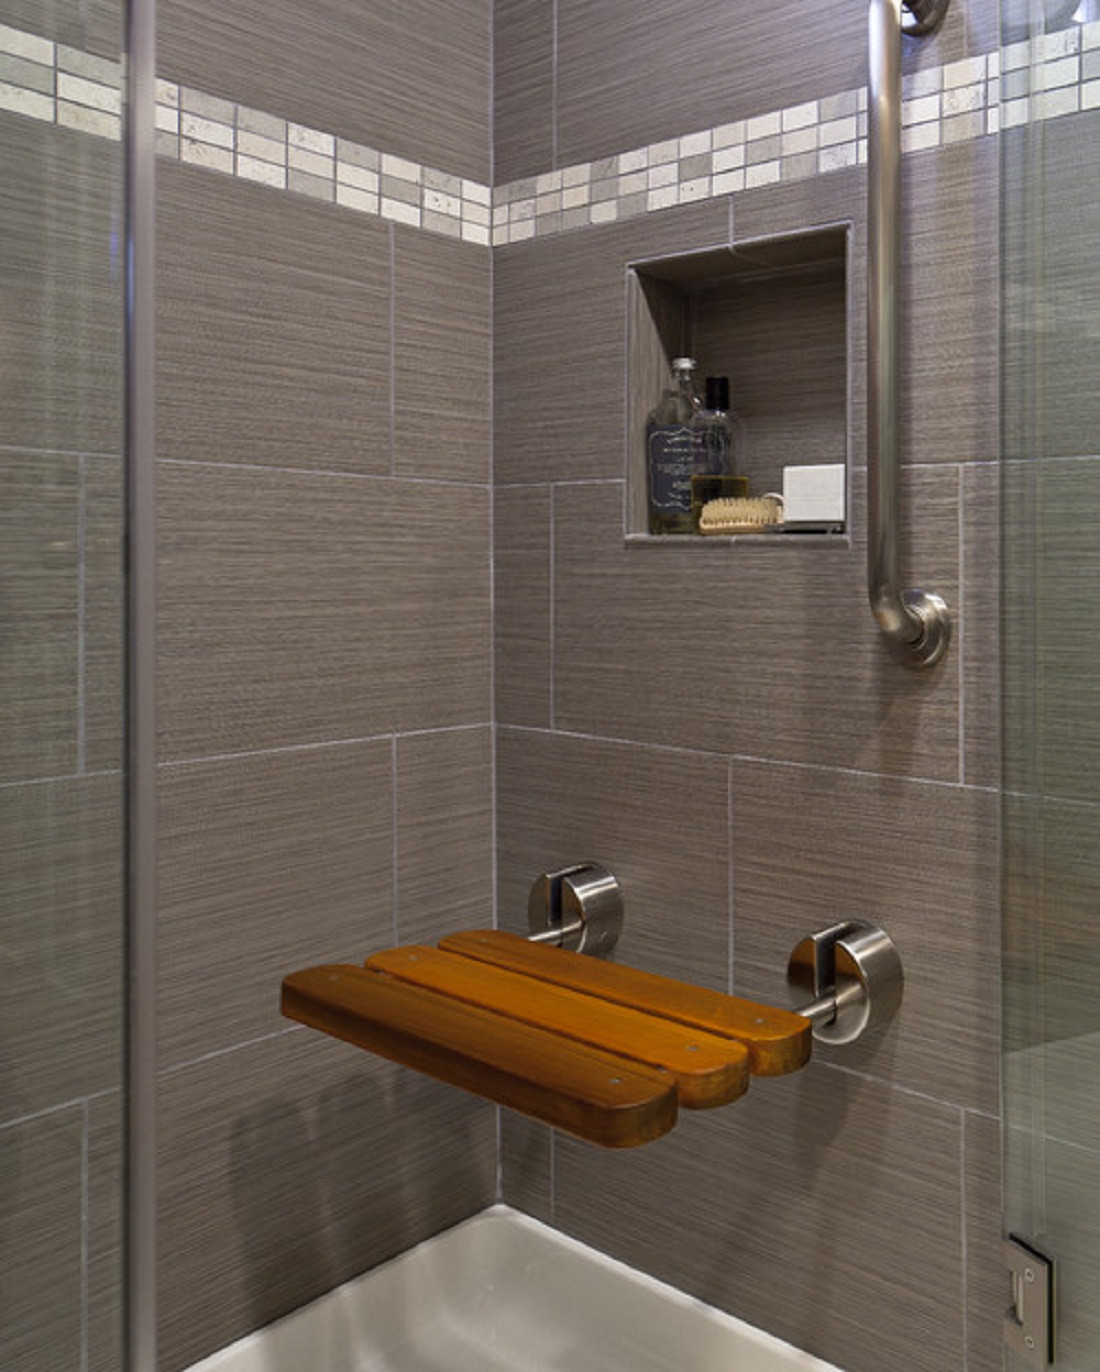 Bathroom Shower Floor Tile Ideas
 50 magnificent ultra modern bathroom tile ideas photos